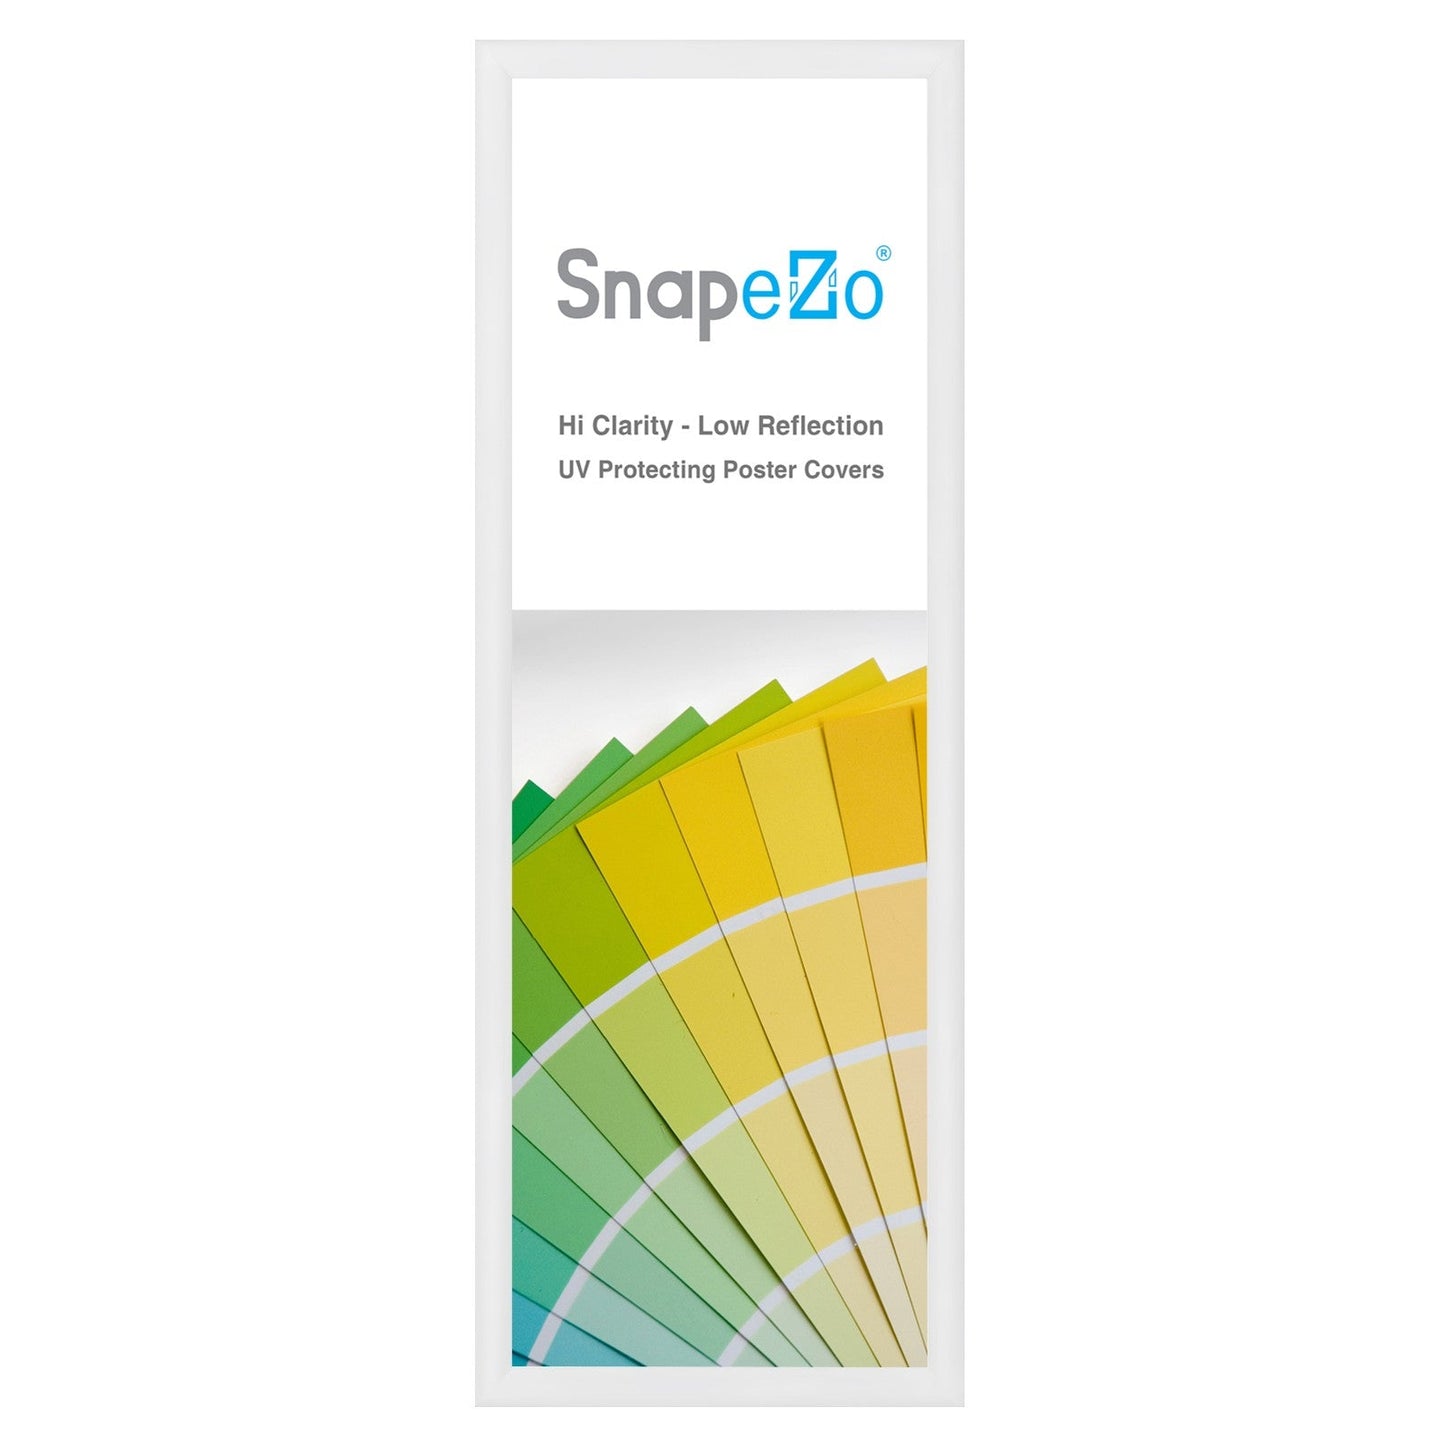 10x29 White SnapeZo® Snap Frame - 1.2" Profile